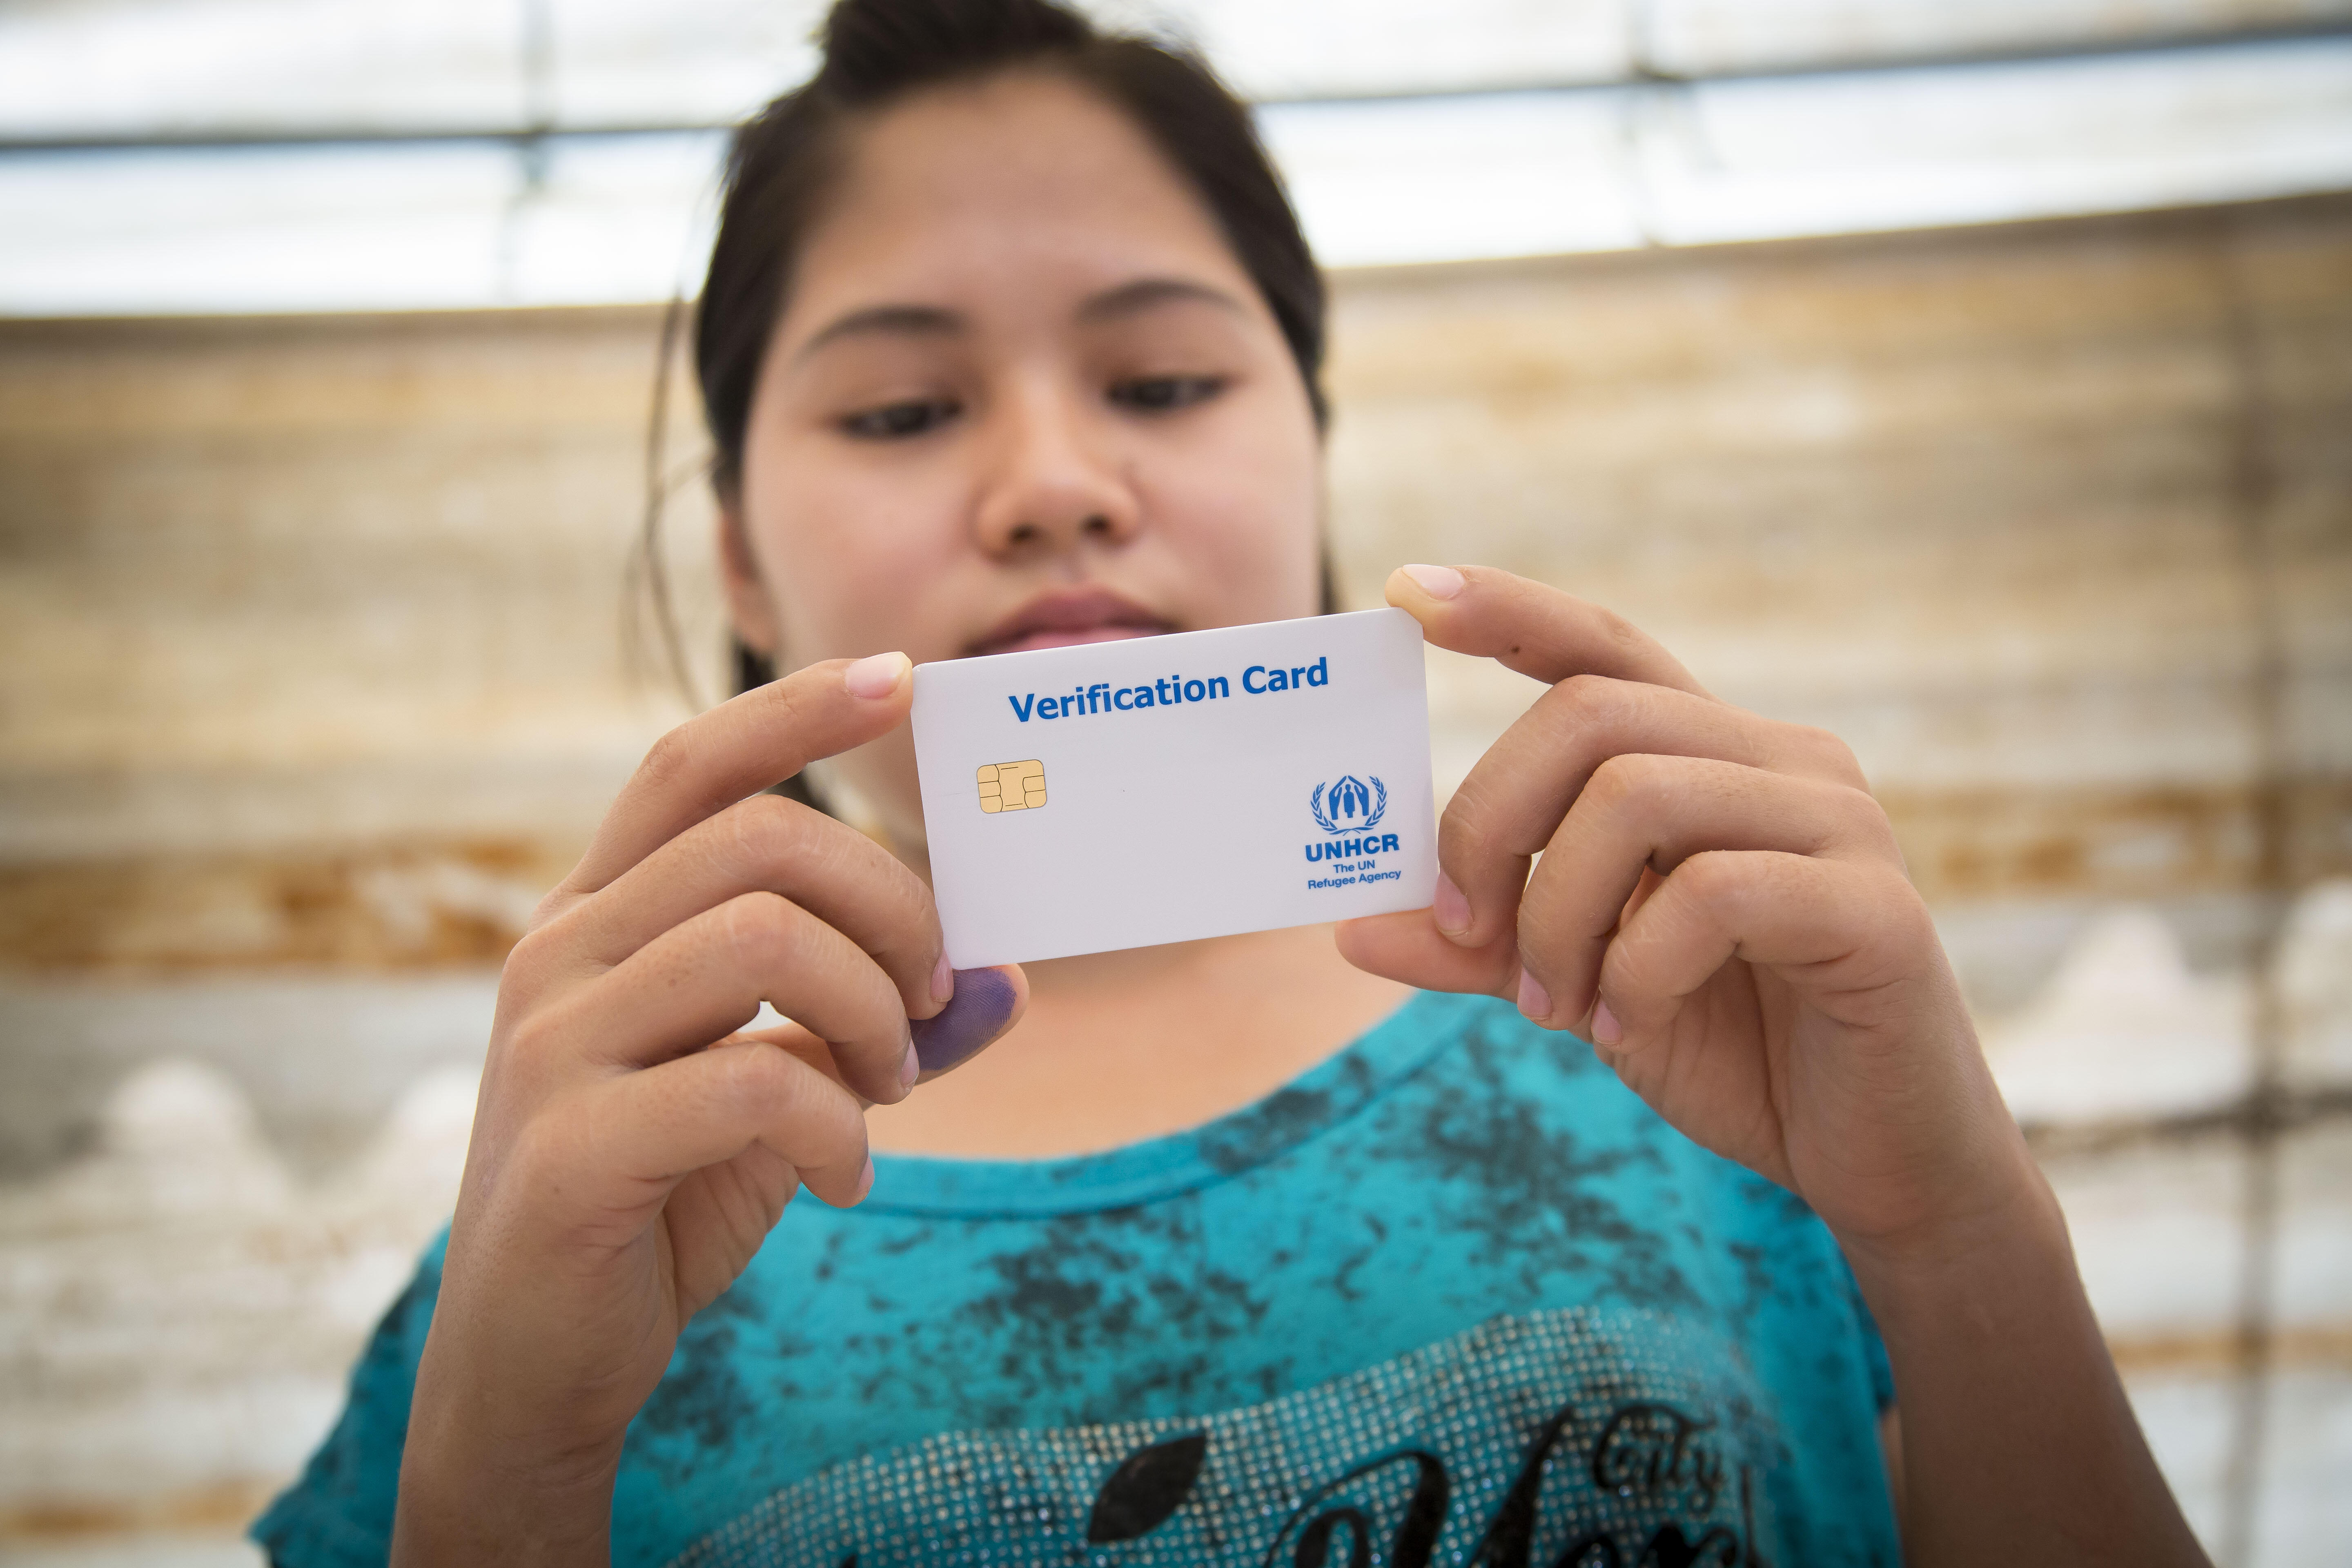 UN Refugee Card